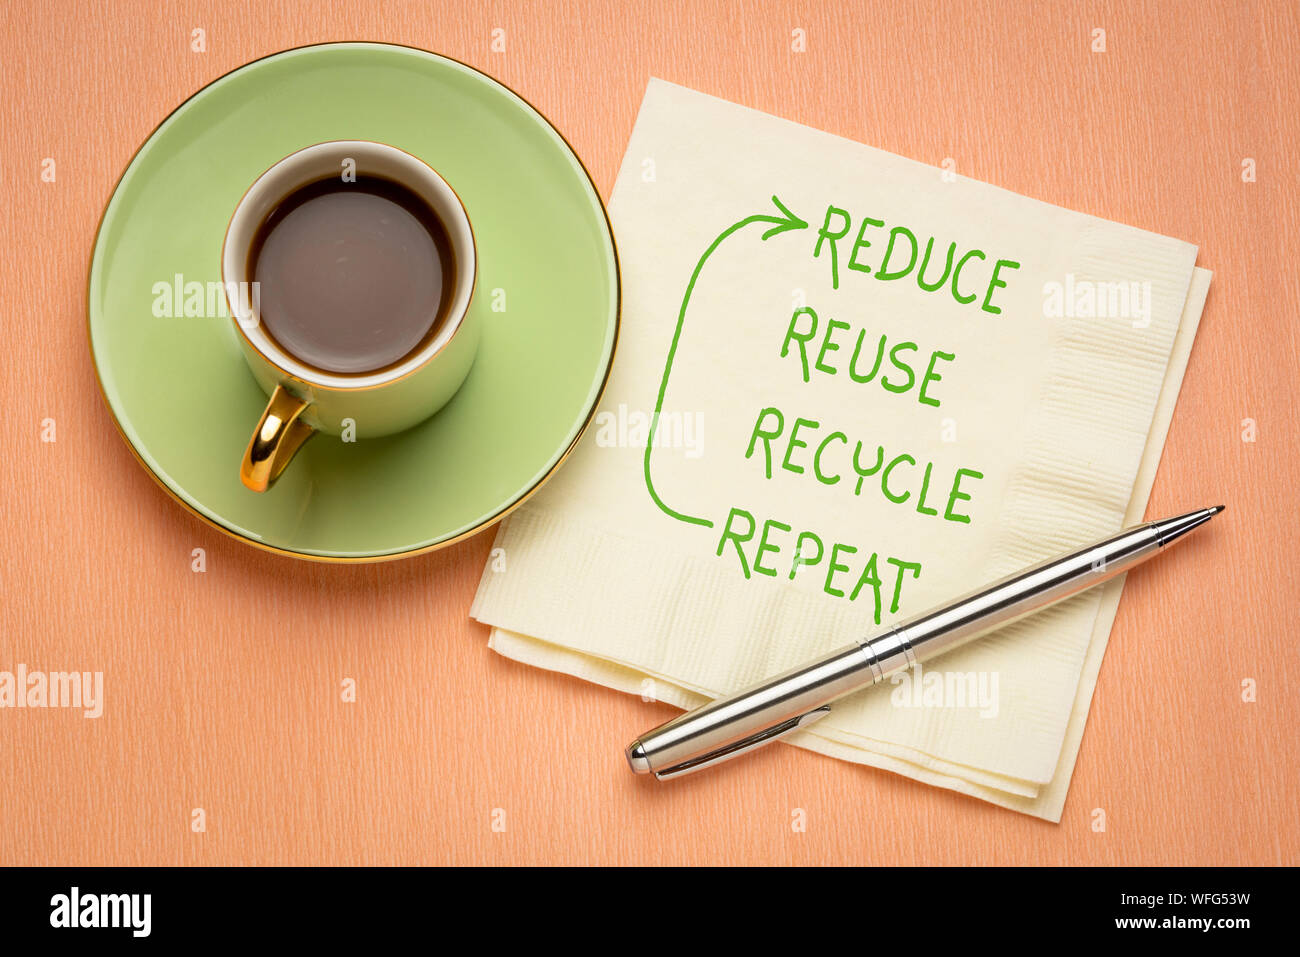 Réduire, réutiliser, recycler, répétez la conservation et la durabilité de l'environnement - concept - écriture sur une serviette avec une tasse de café Banque D'Images